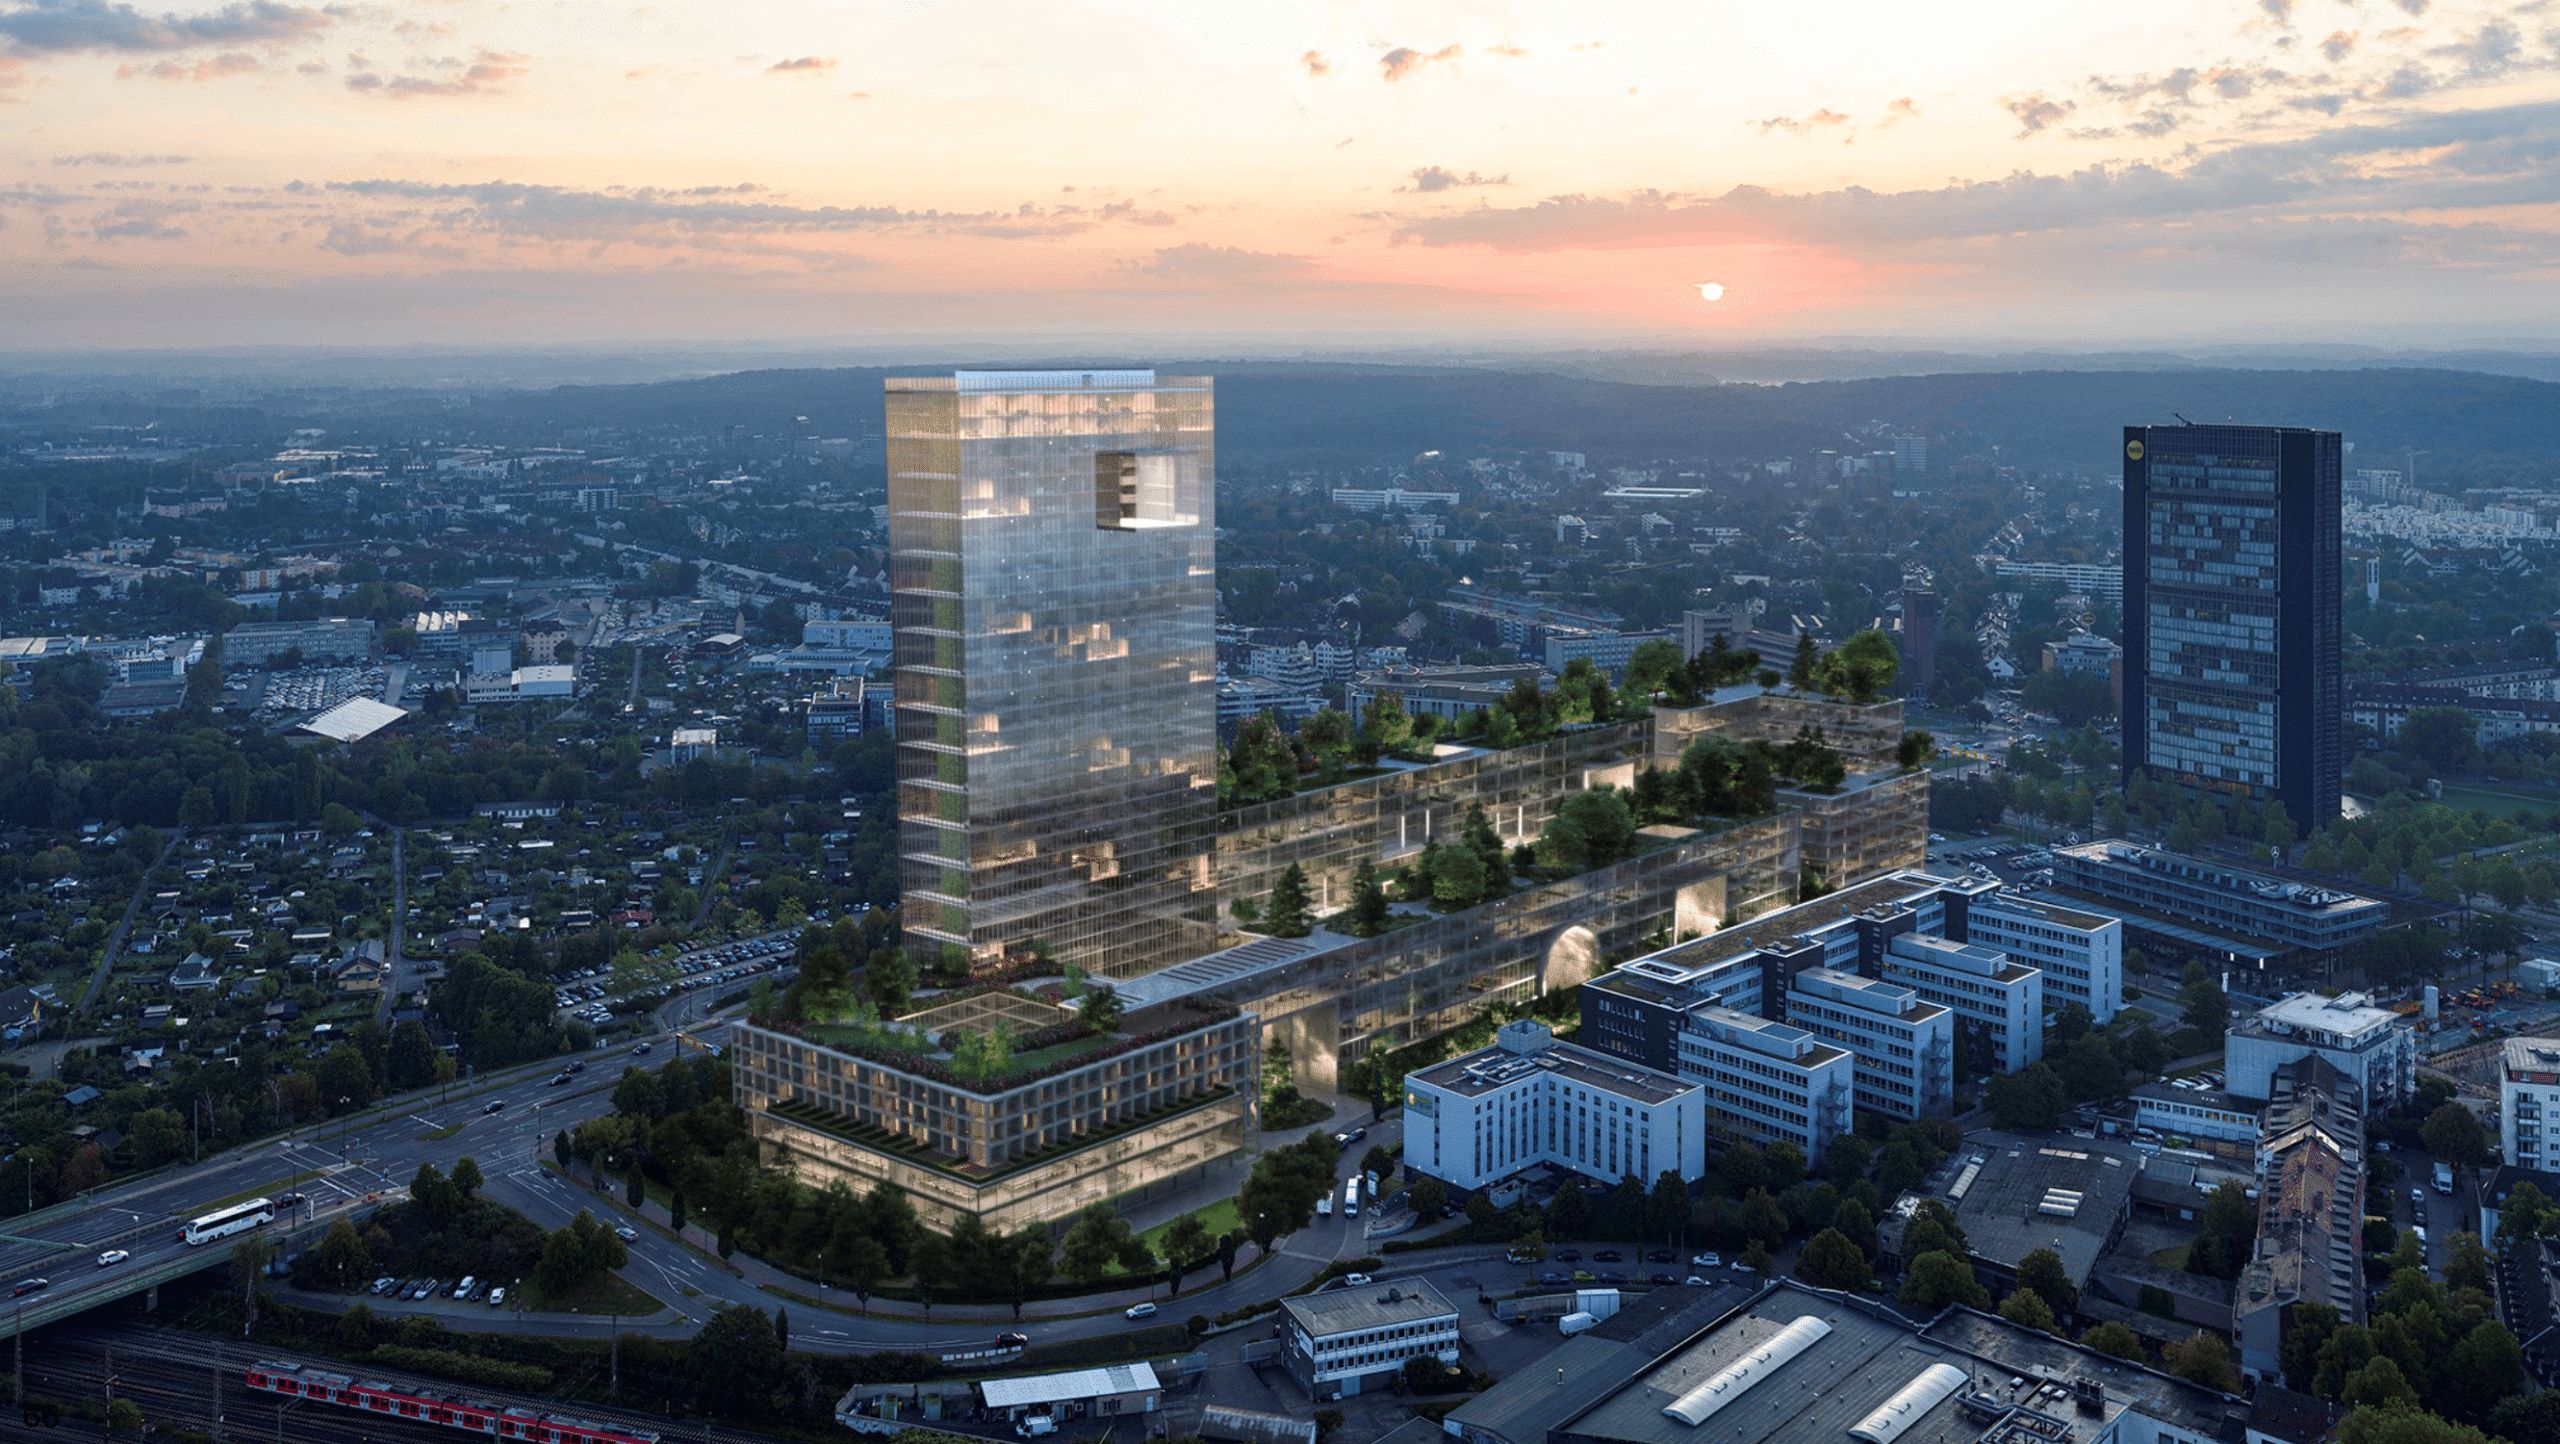 Das Bild zeigt das geplante Büroge-bäude/Turm von dem Architekten Tadao Ando in Düsseldorf entstehen soll